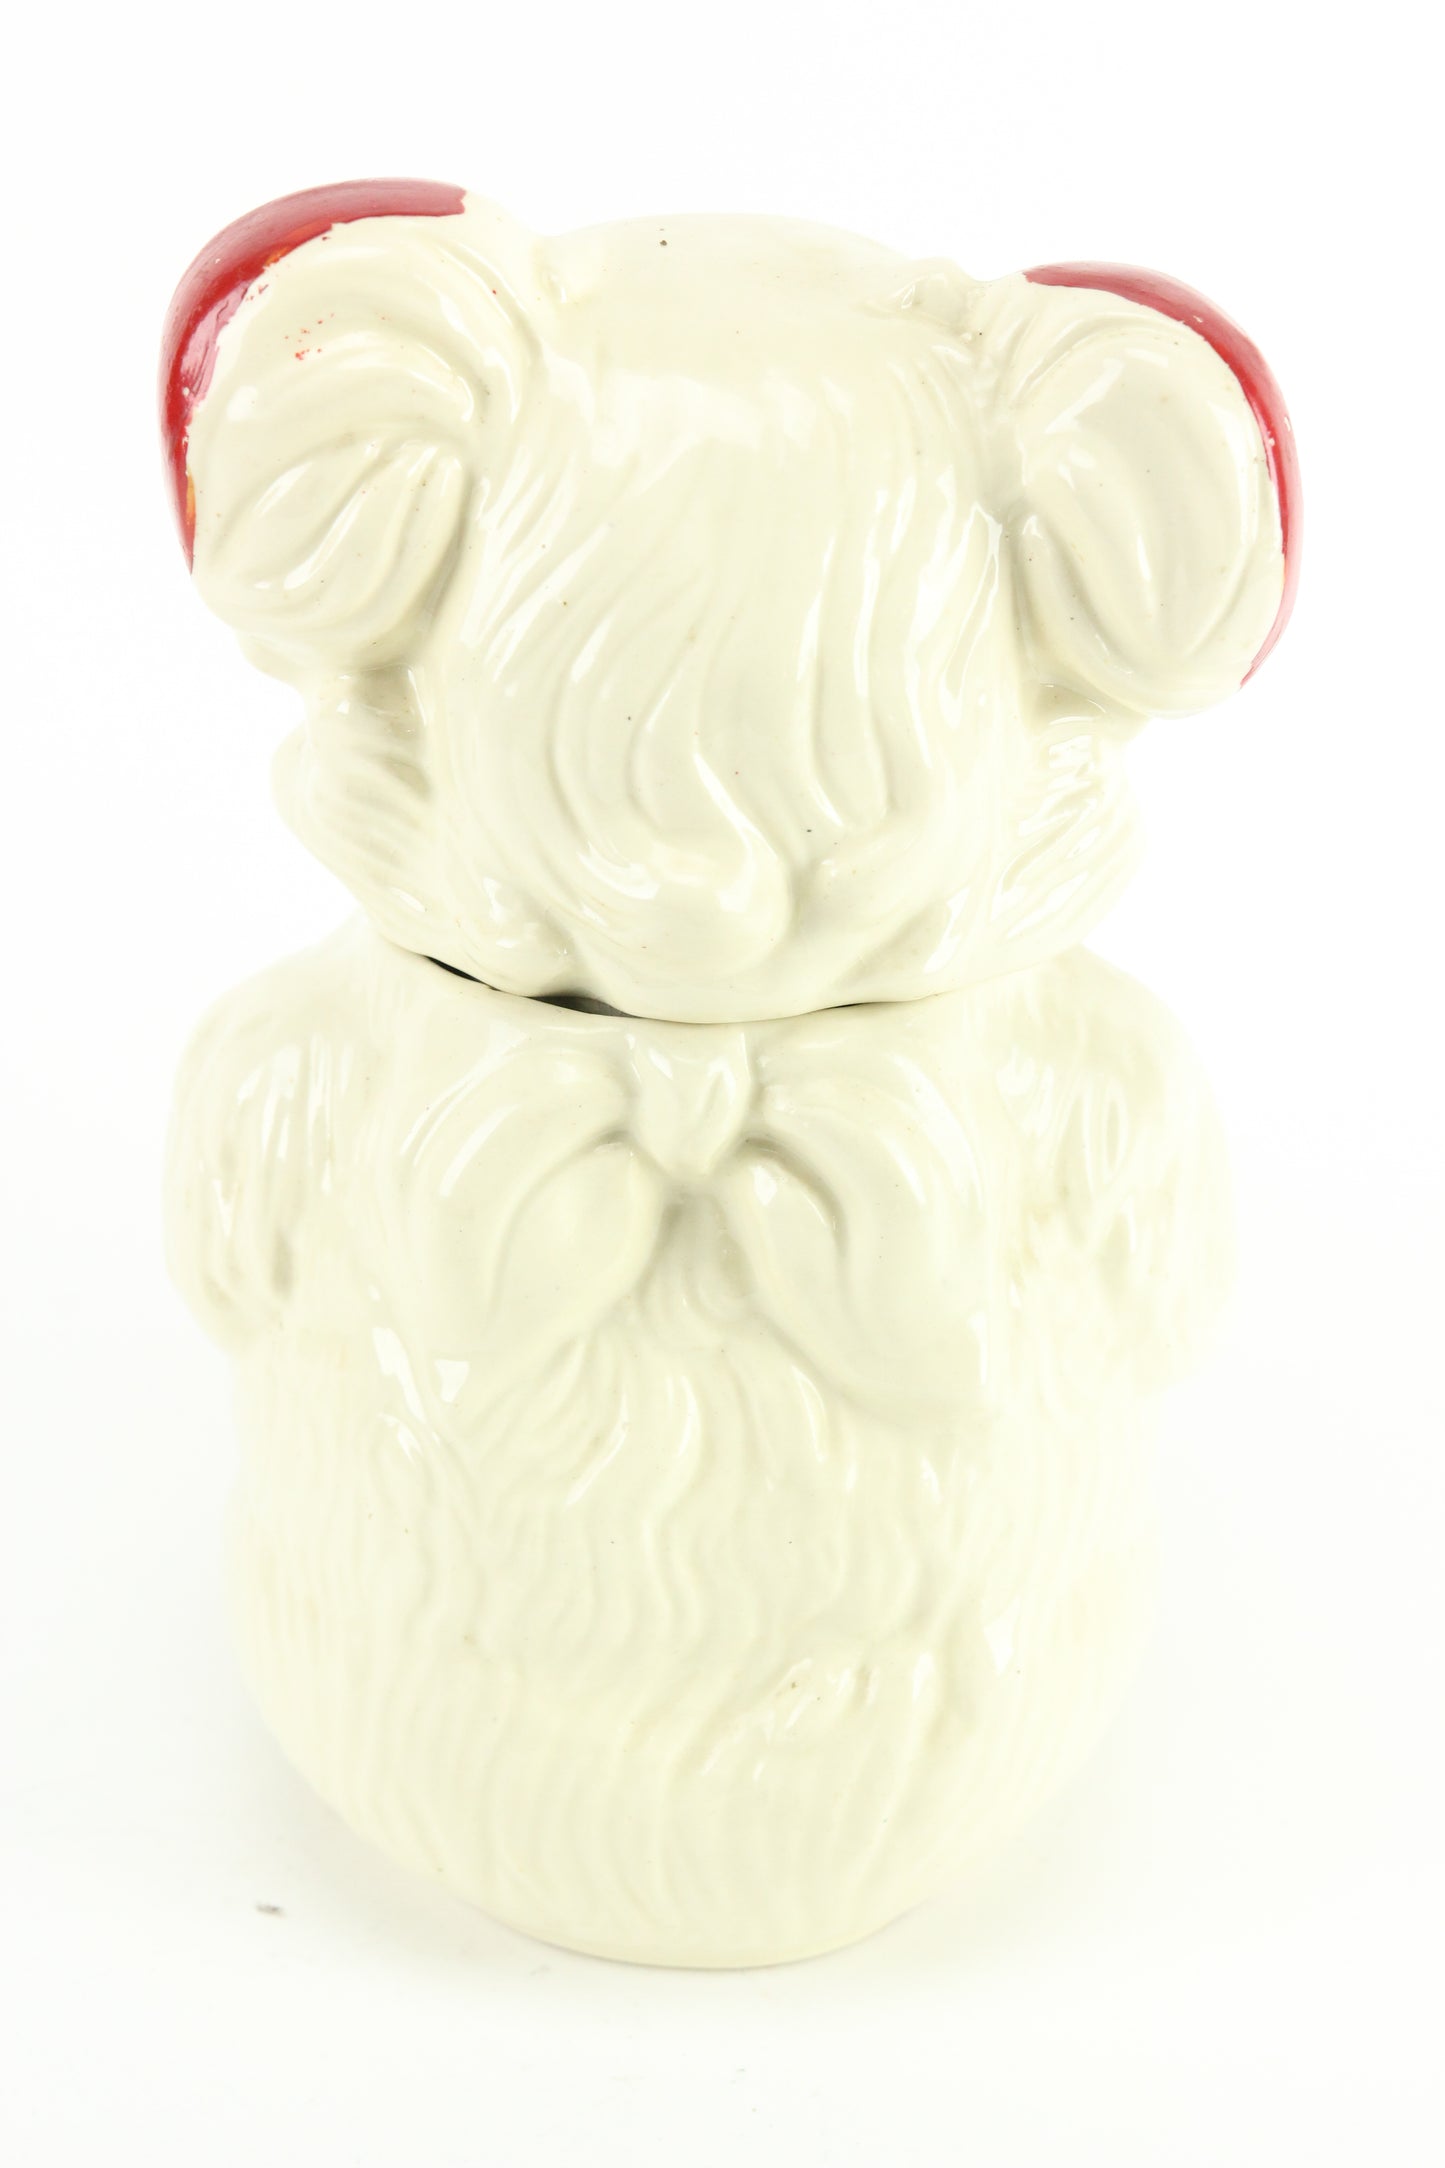 Royal Ware Teddy Bear Painted Ceramic Cookie Jar, 1940s